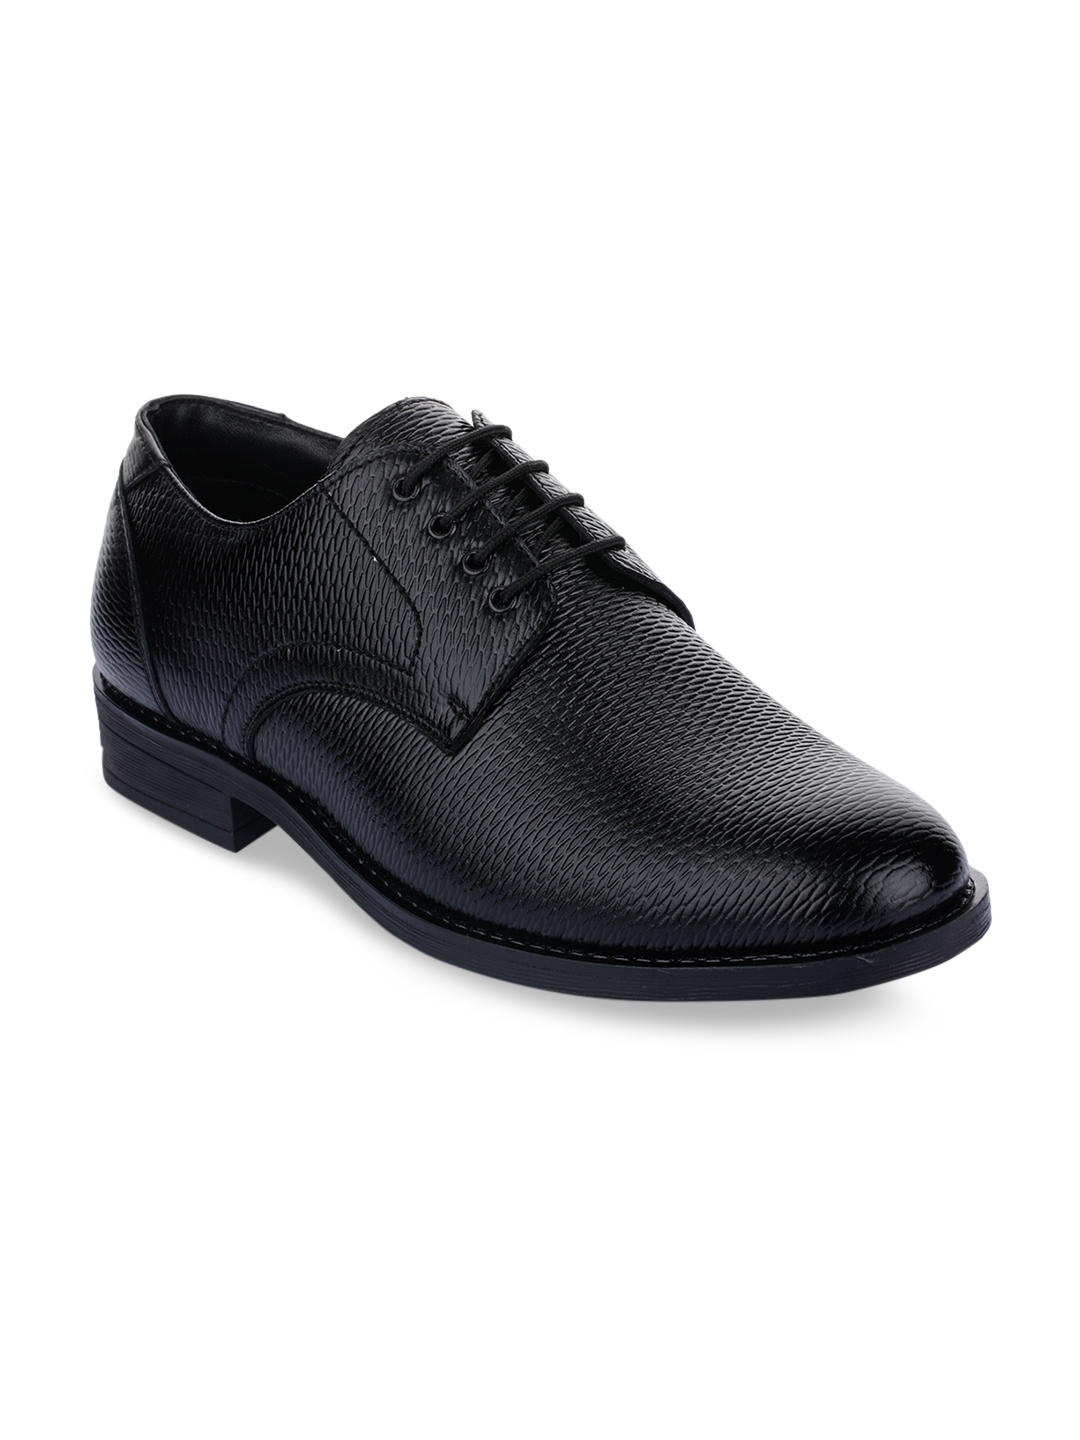 Buy Liberty Men Black Textured Formal Derbys - Formal Shoes for Men ...